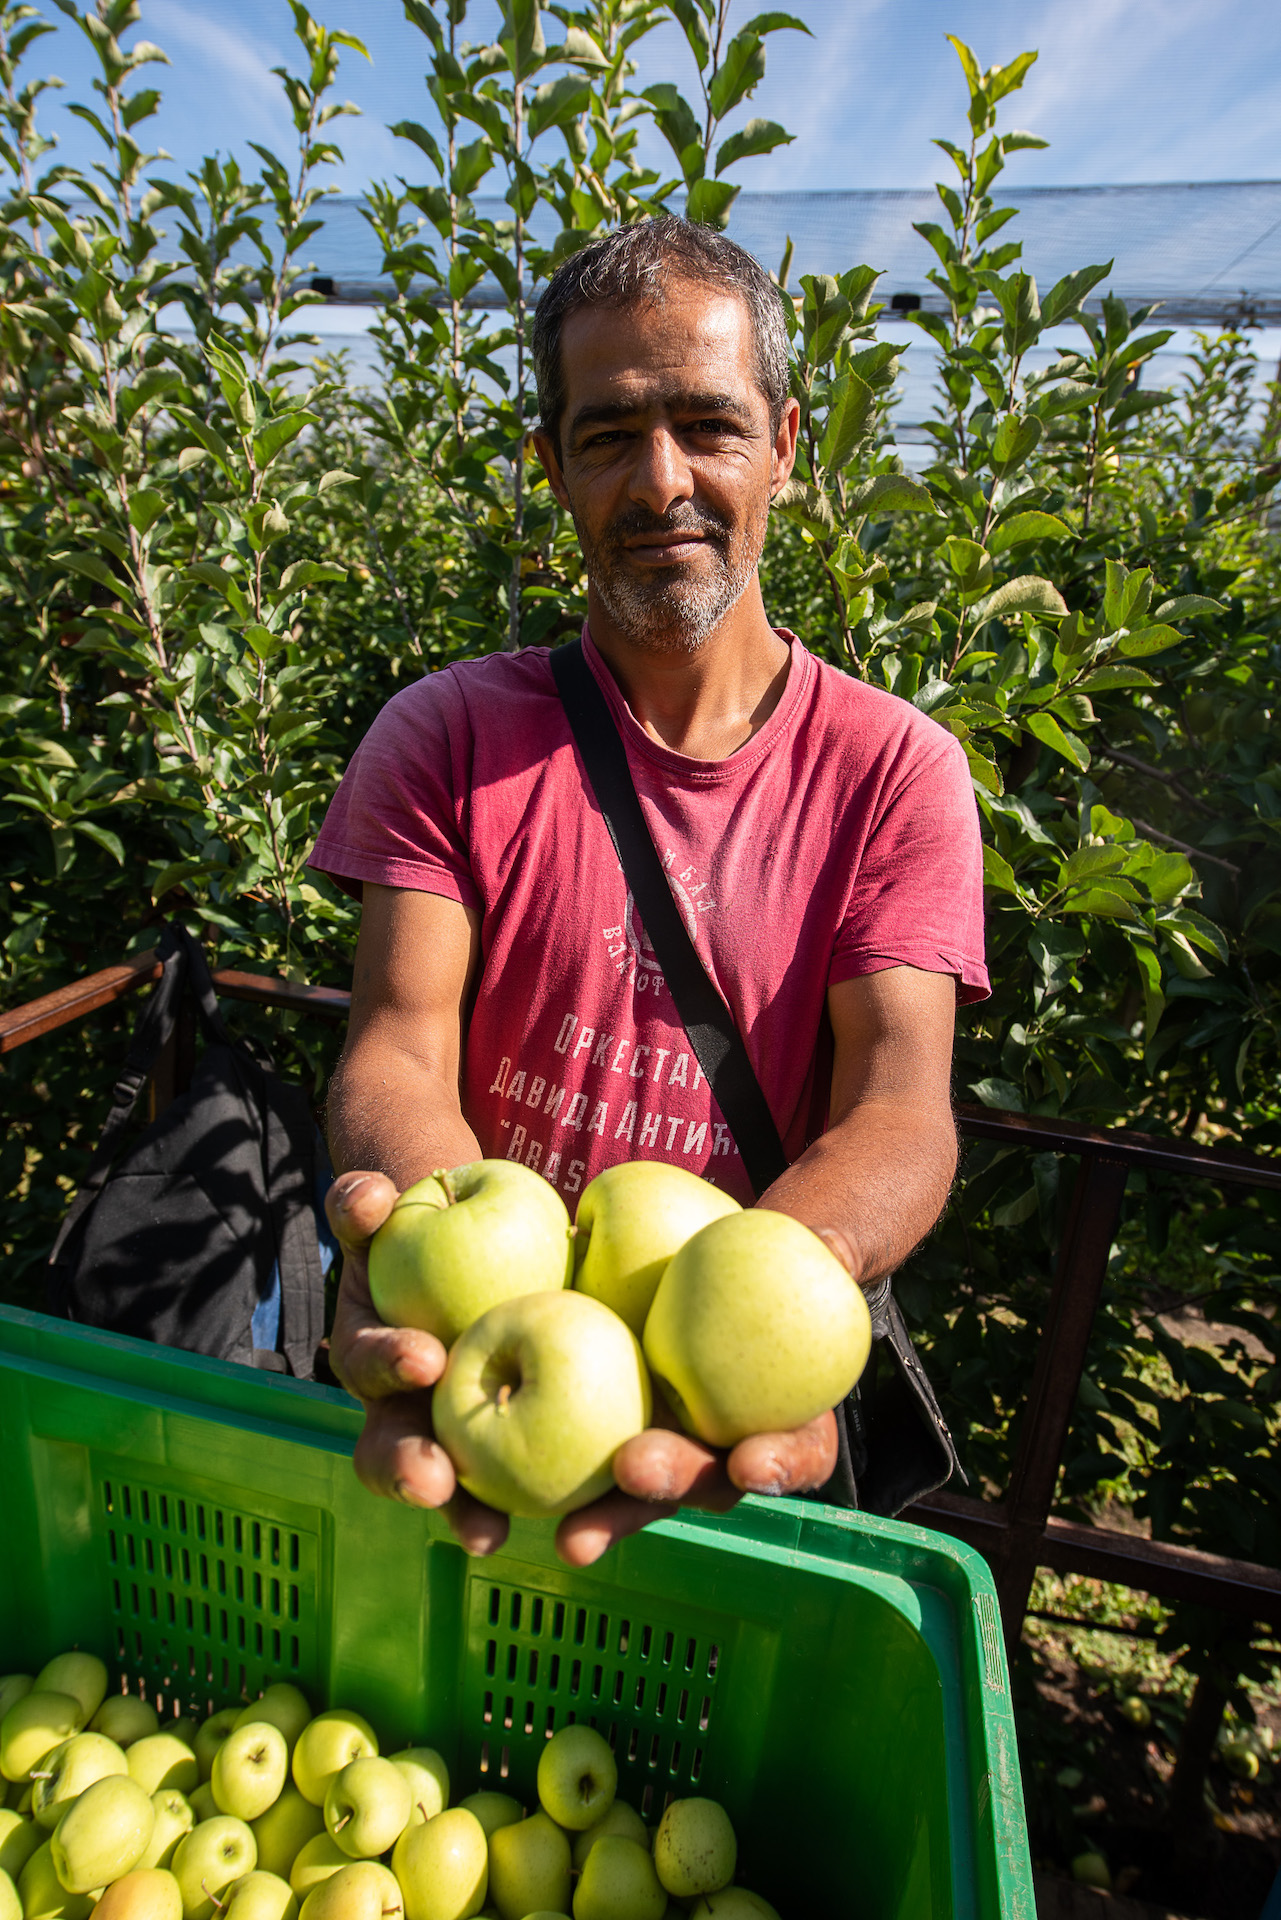 Ein Mann in rotem T-Shirt steht vor Apfelbäumen und hält vier grüne Äpfel in die Kamera.